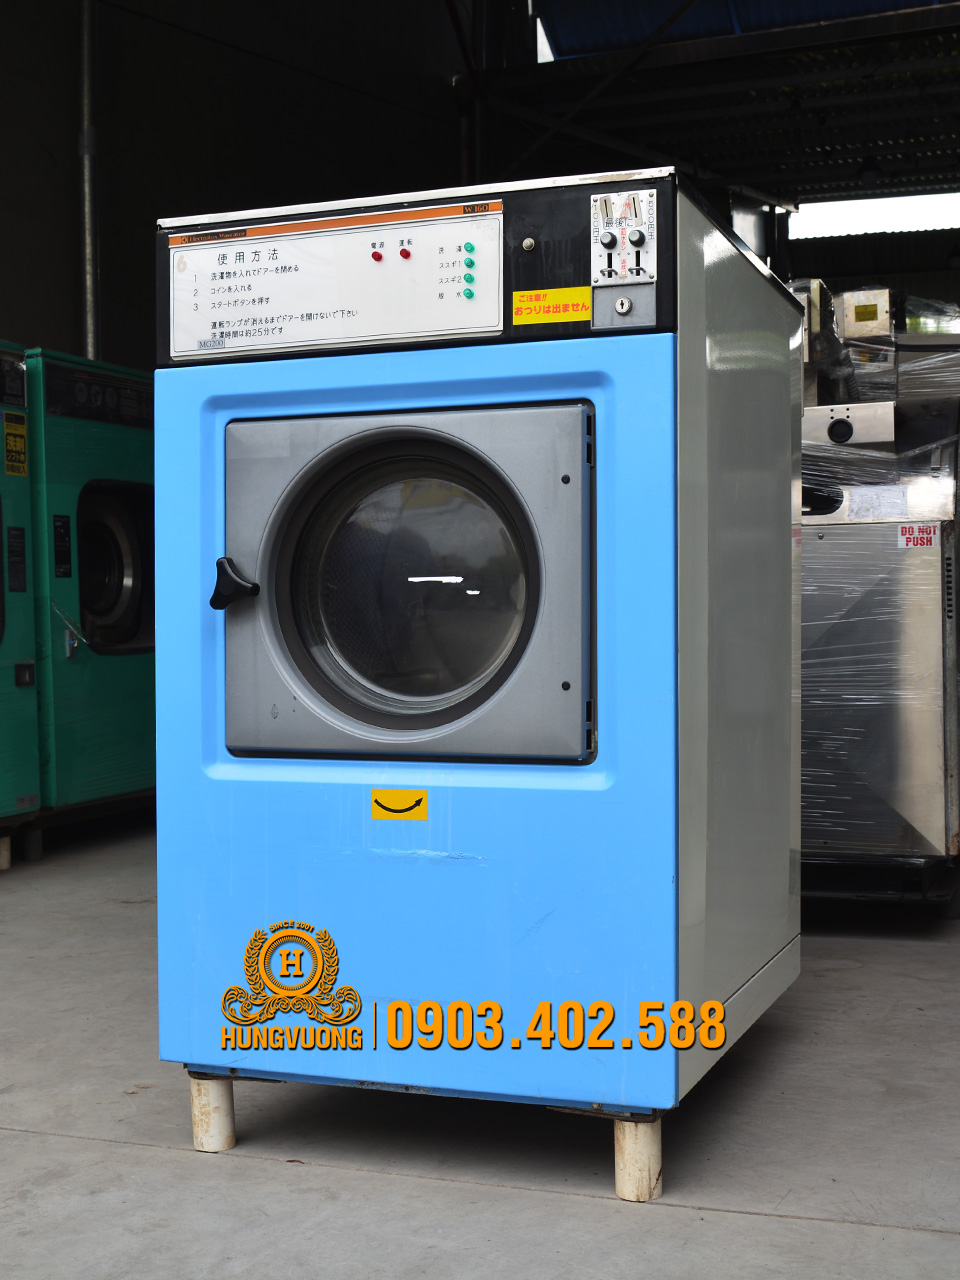 Mặt nghiêng máy giặt công nghiệp ELECTROLUX WASCATOR W160,16kg, chân cố định, Thụy Điển